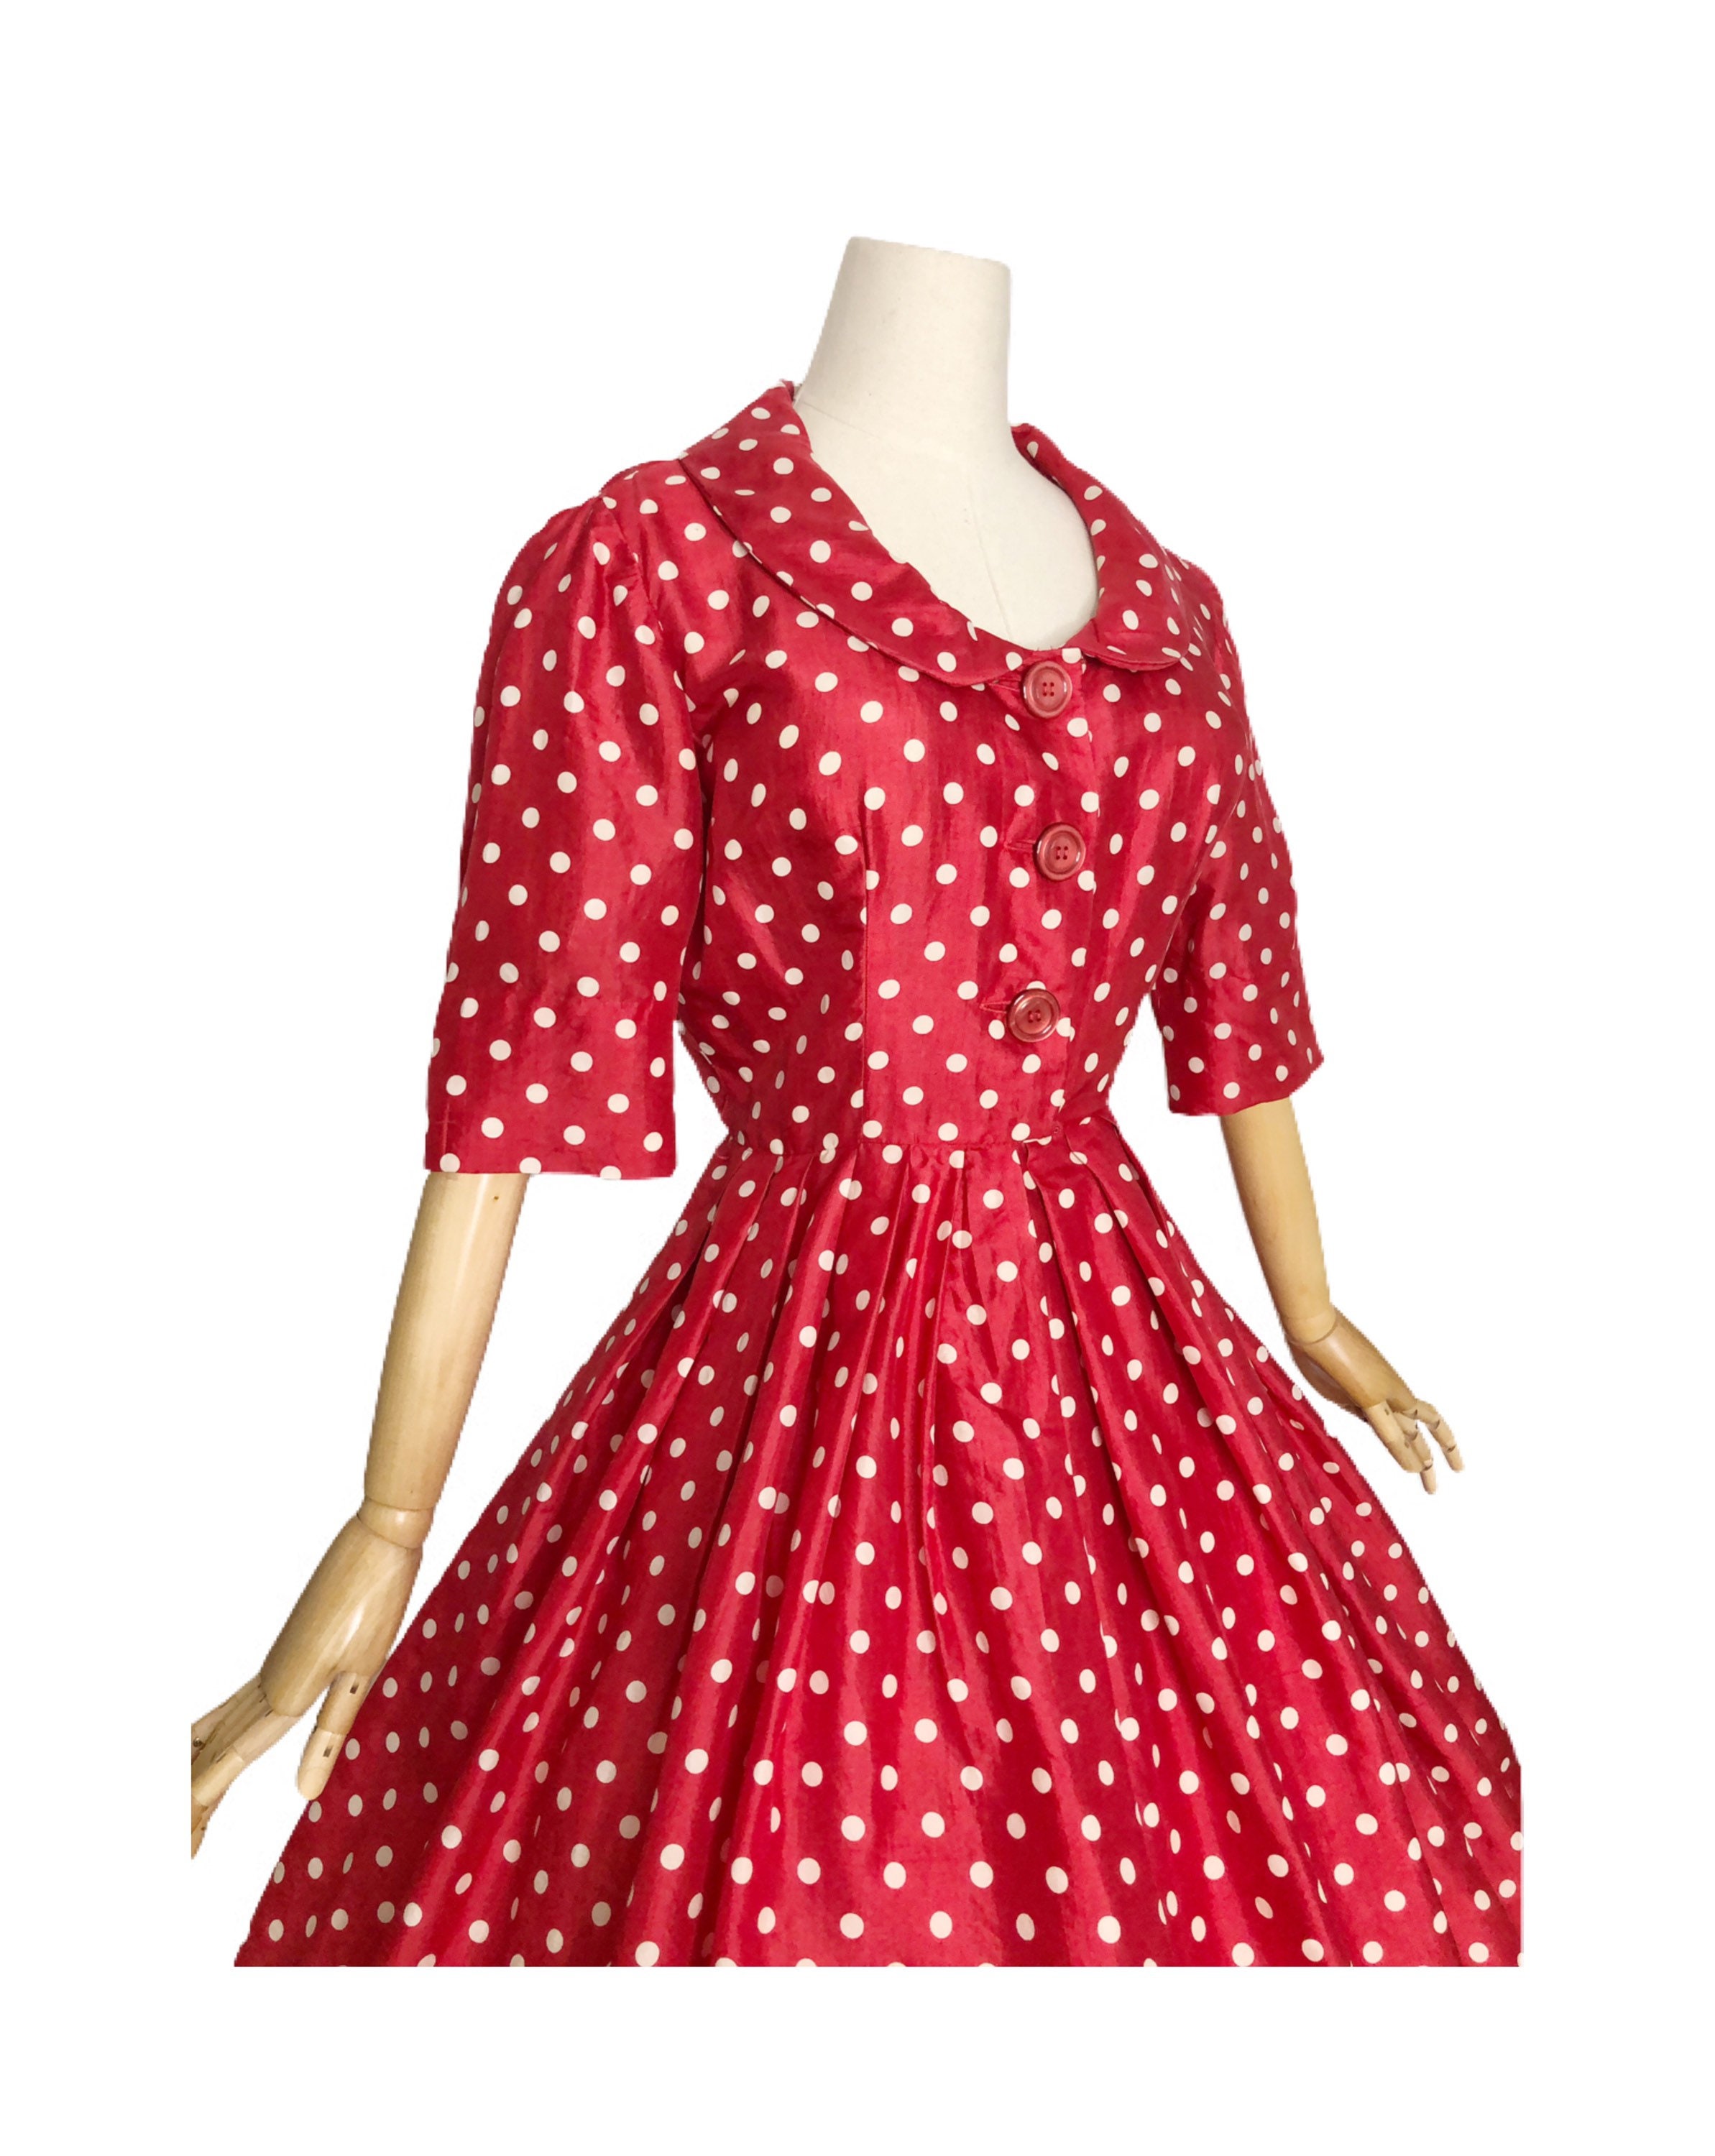 50s Polka Dot Dress - Etsy